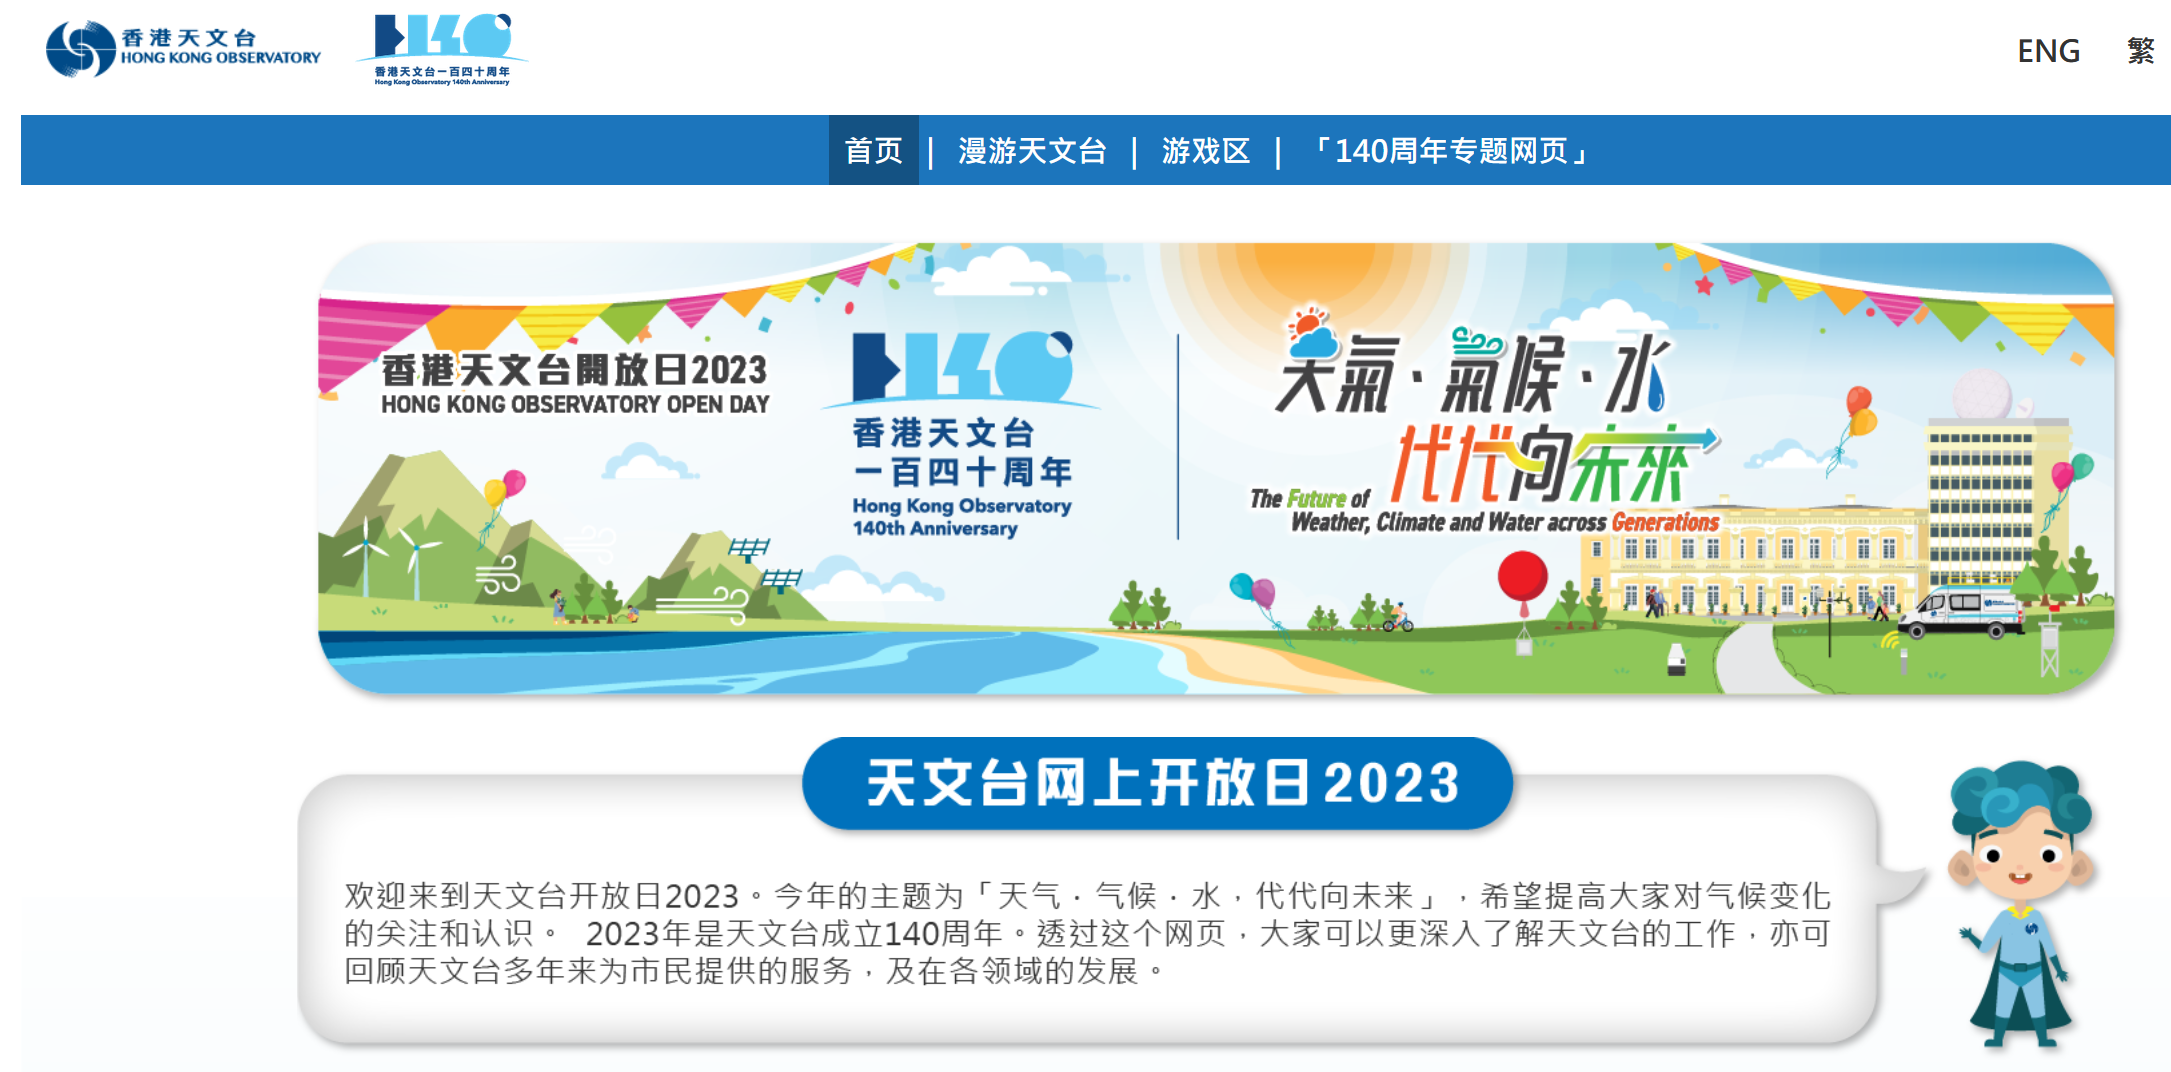 「香港天文台开放日2023」网页